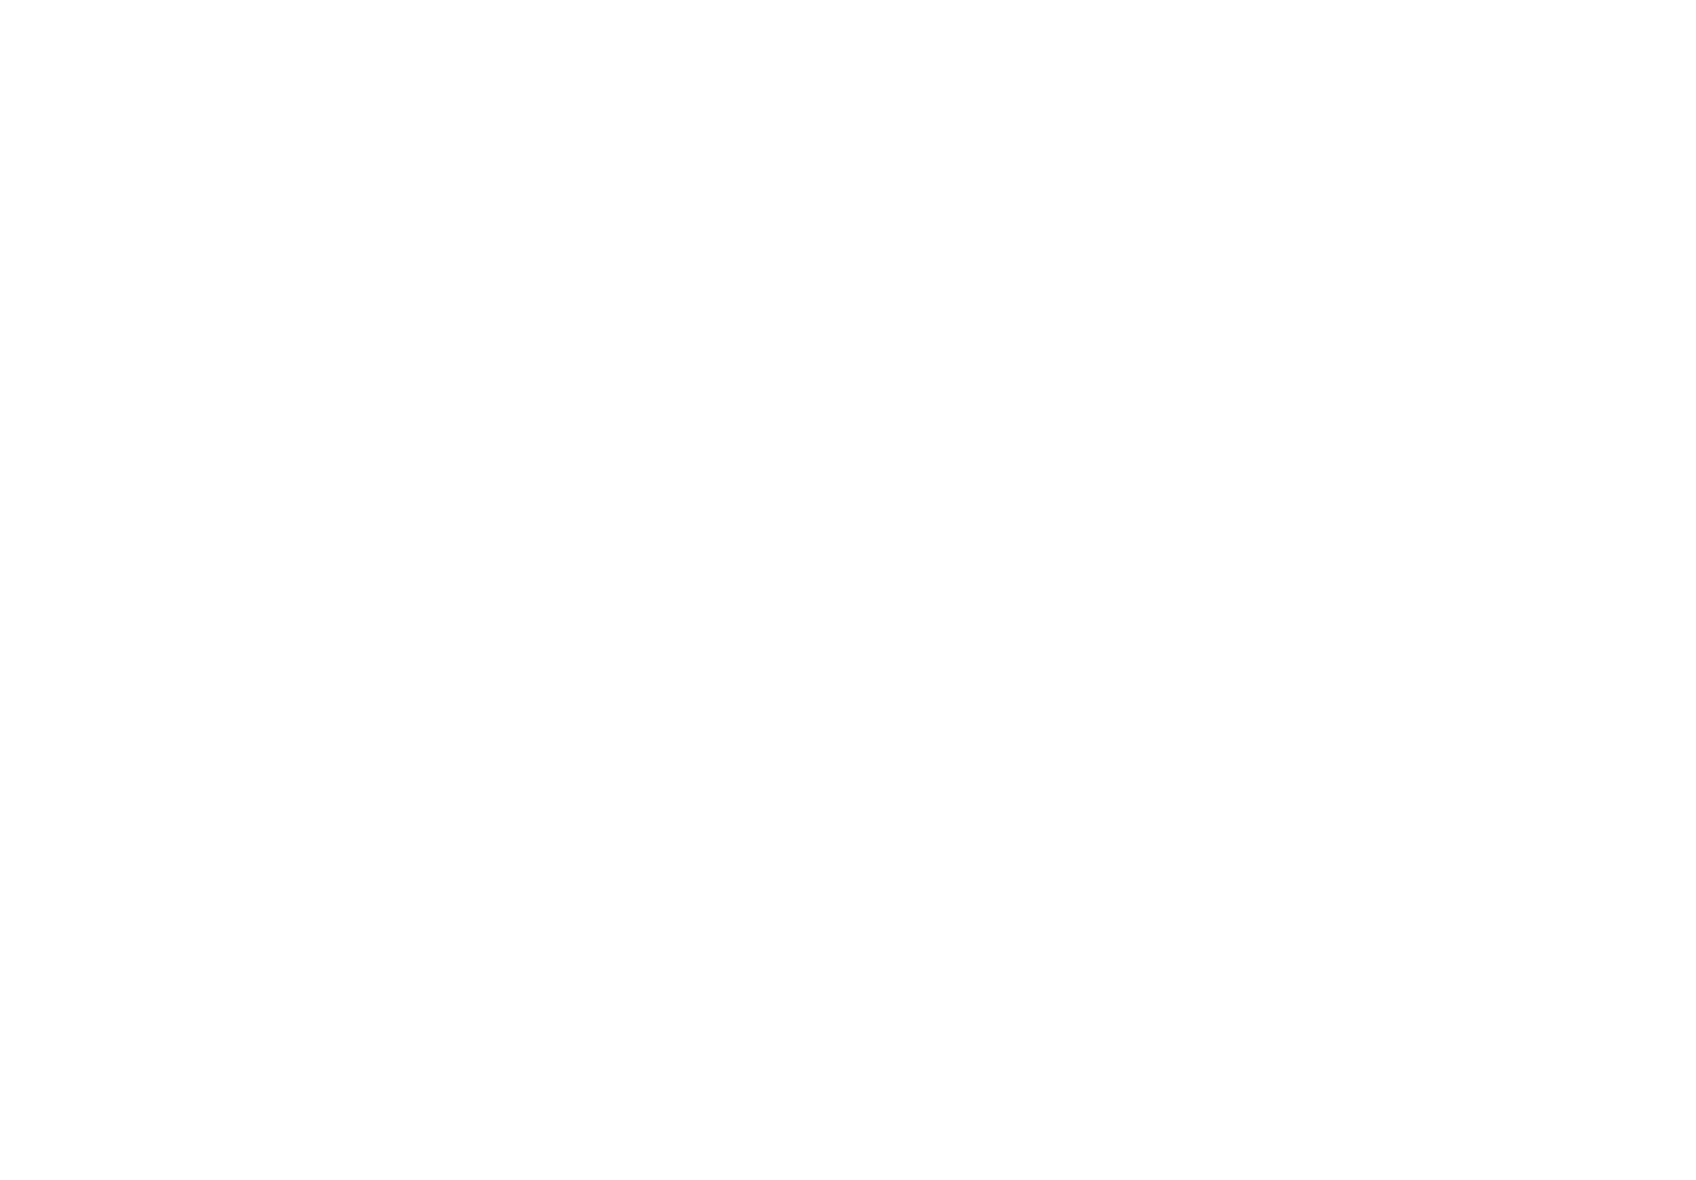 Kayley Bishop